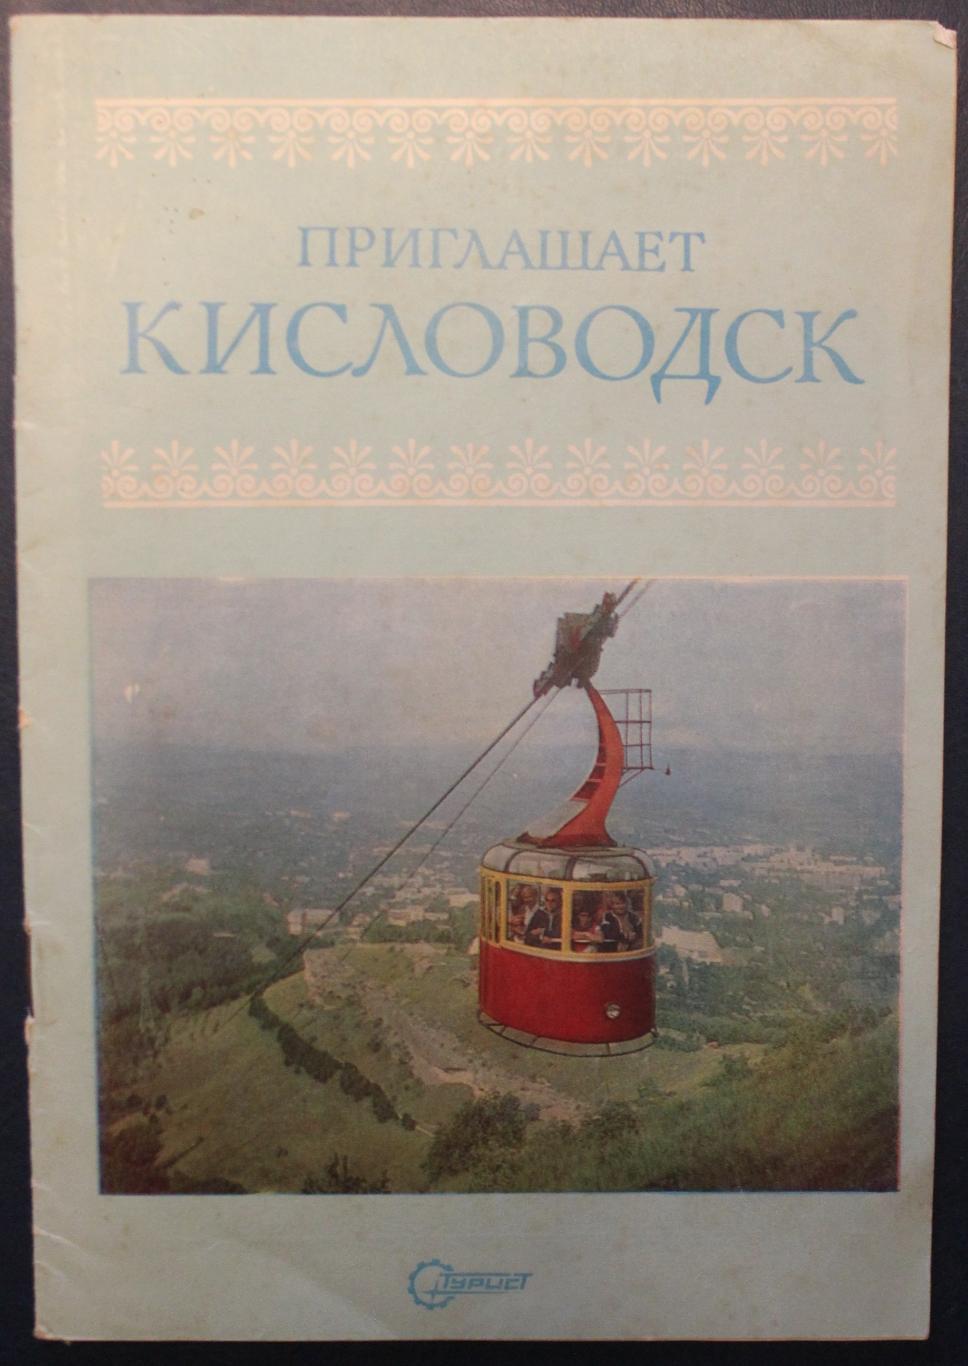 Цветной фотобуклет Приглашает Кисловодск изд. Турист 1989